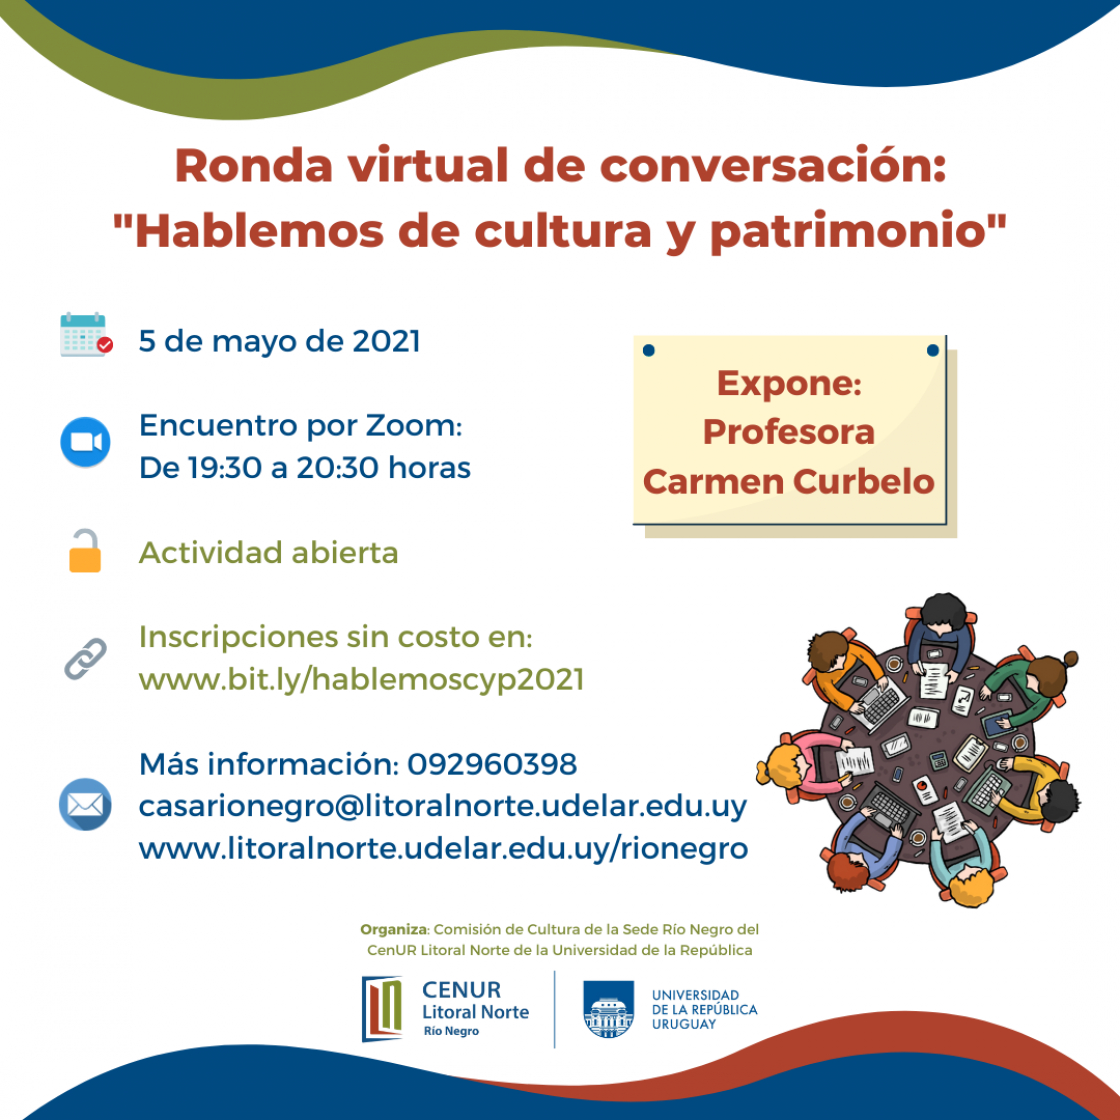 Ronda virtual de conversación: "Hablemos de cultura y patrimonio"